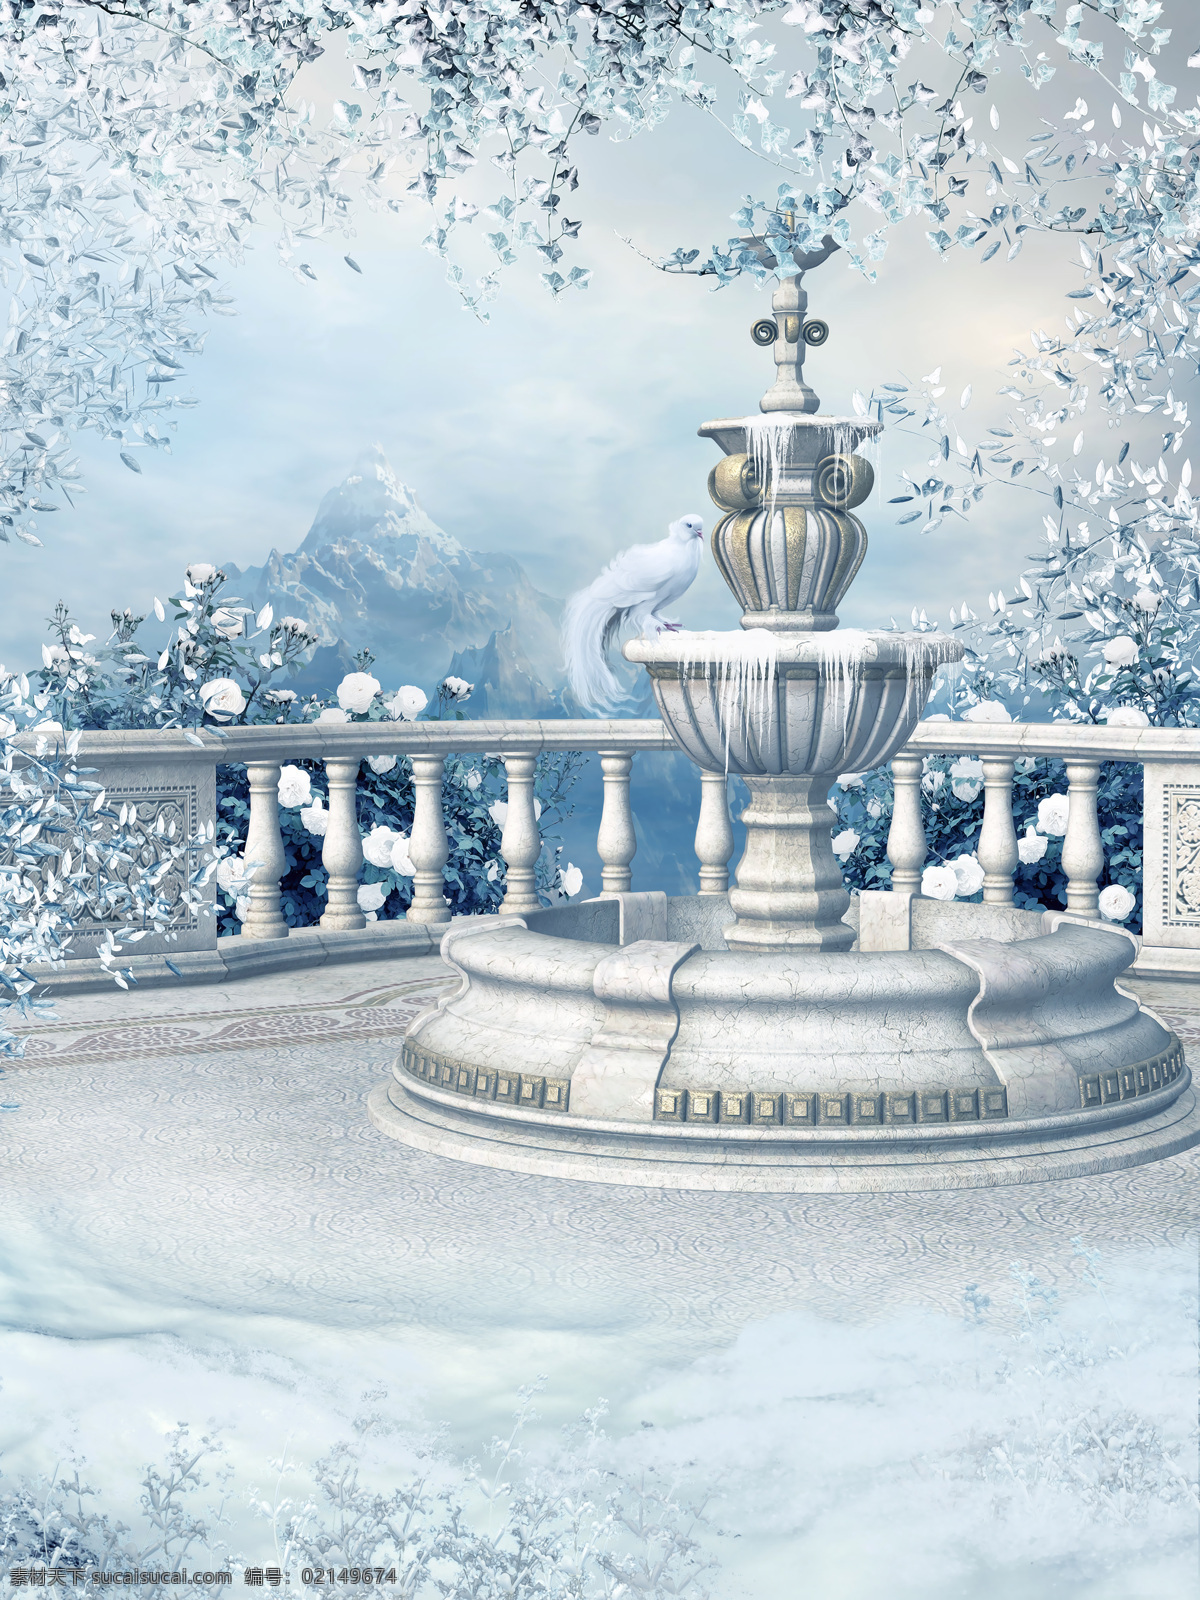 喷泉 风景 雪山风景 栏杆 小鸟 冬天风景 美丽风景 雪地风景 其他类别 环境家居